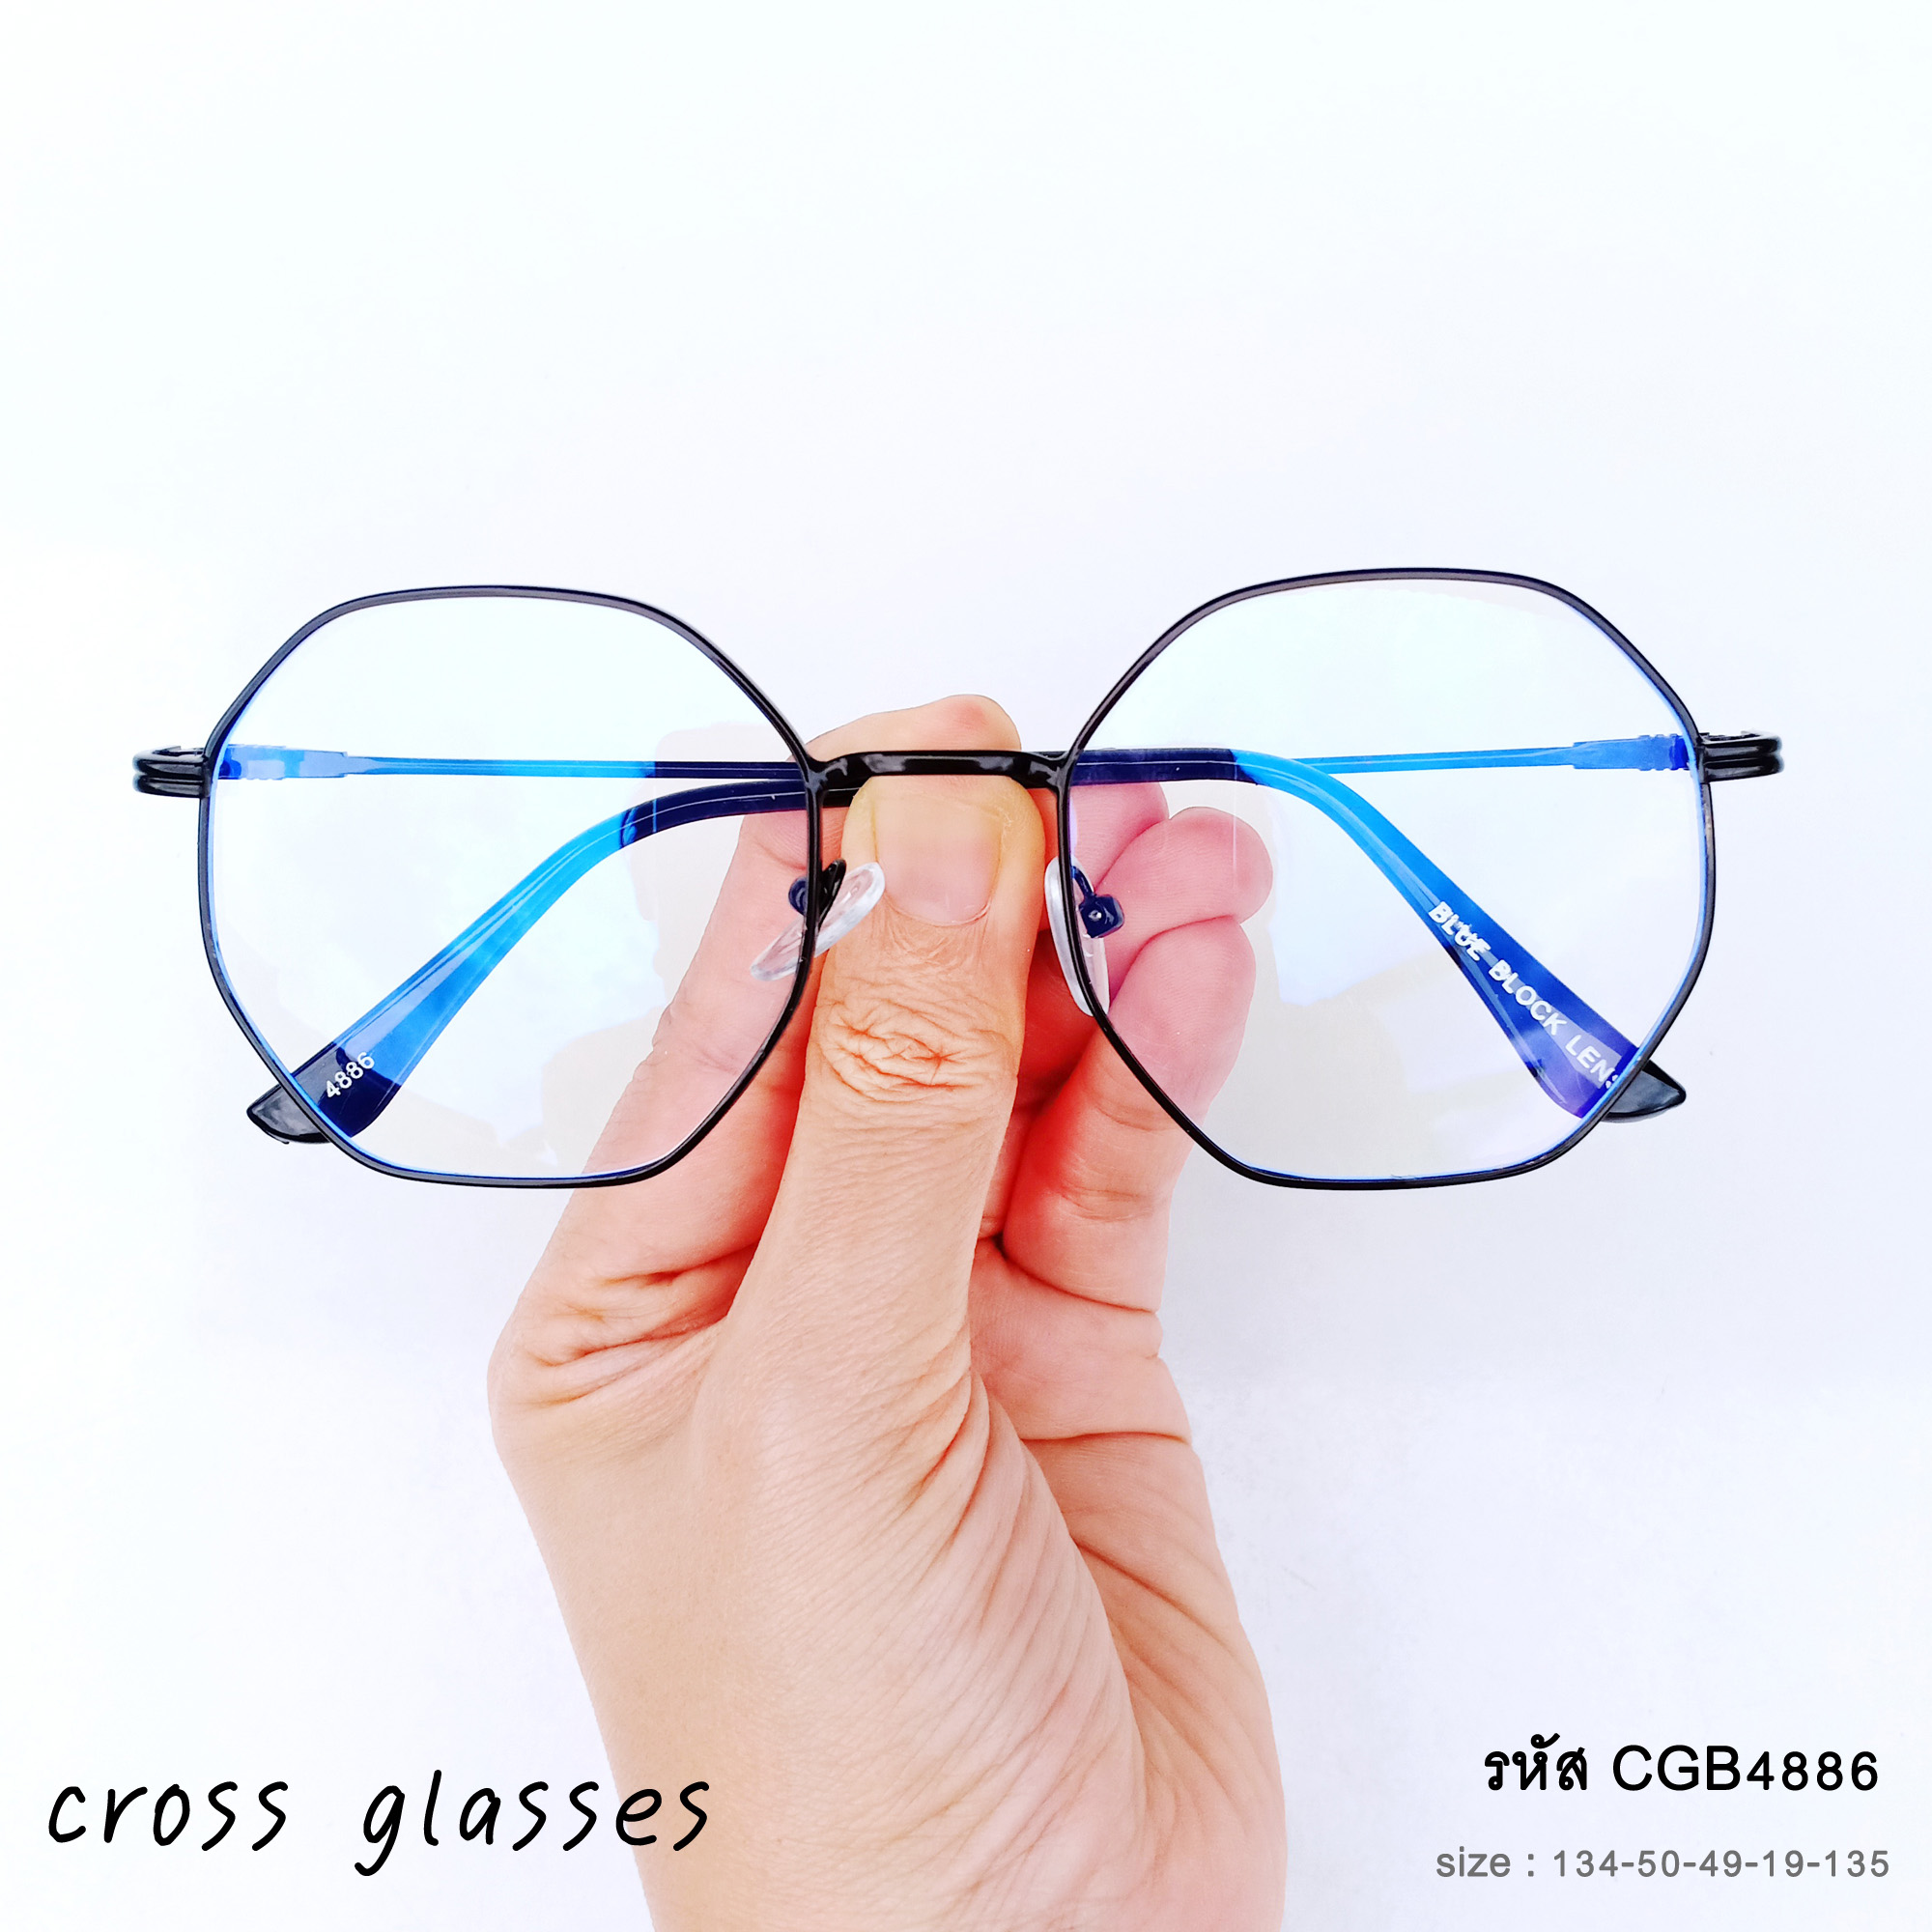 แว่นกรองแสงสีฟ้า เลนส์บลูบล็อคคุณภาพดี รหัส CGB4886 ทรงแปดเหลี่ยม